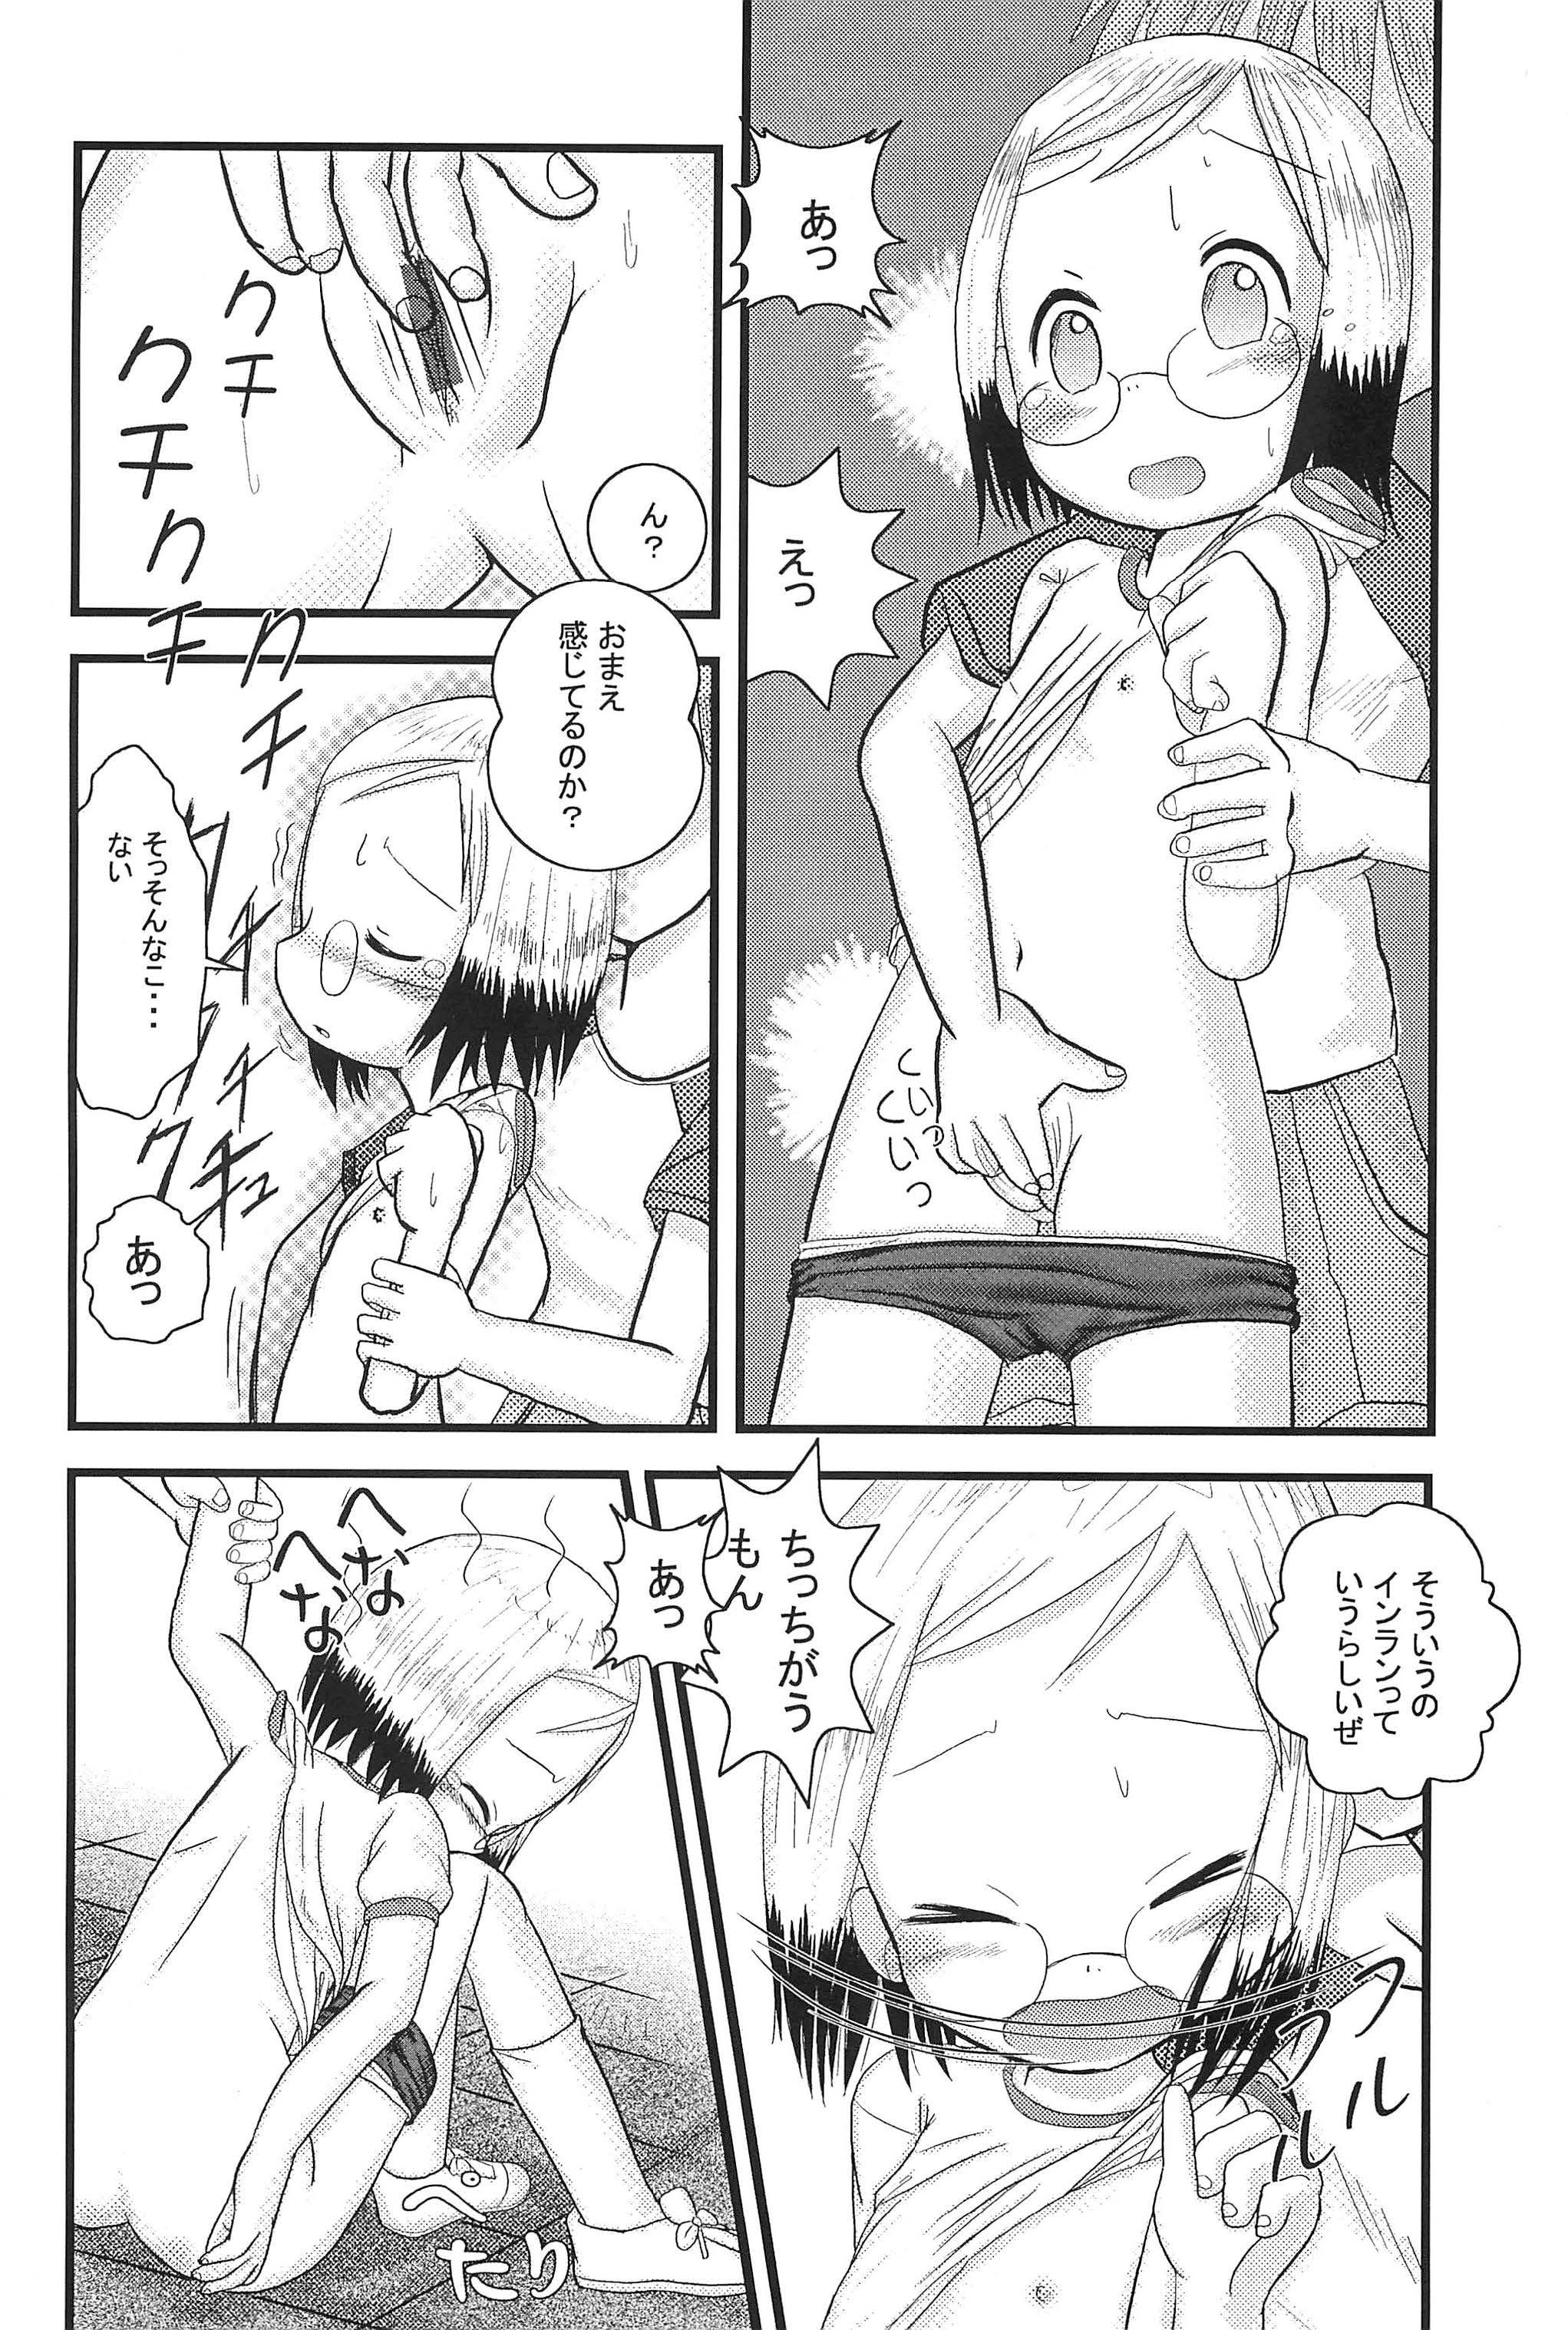 Spy Mix Ribbon 13 - Ichigo mashimaro Women Sucking - Page 12